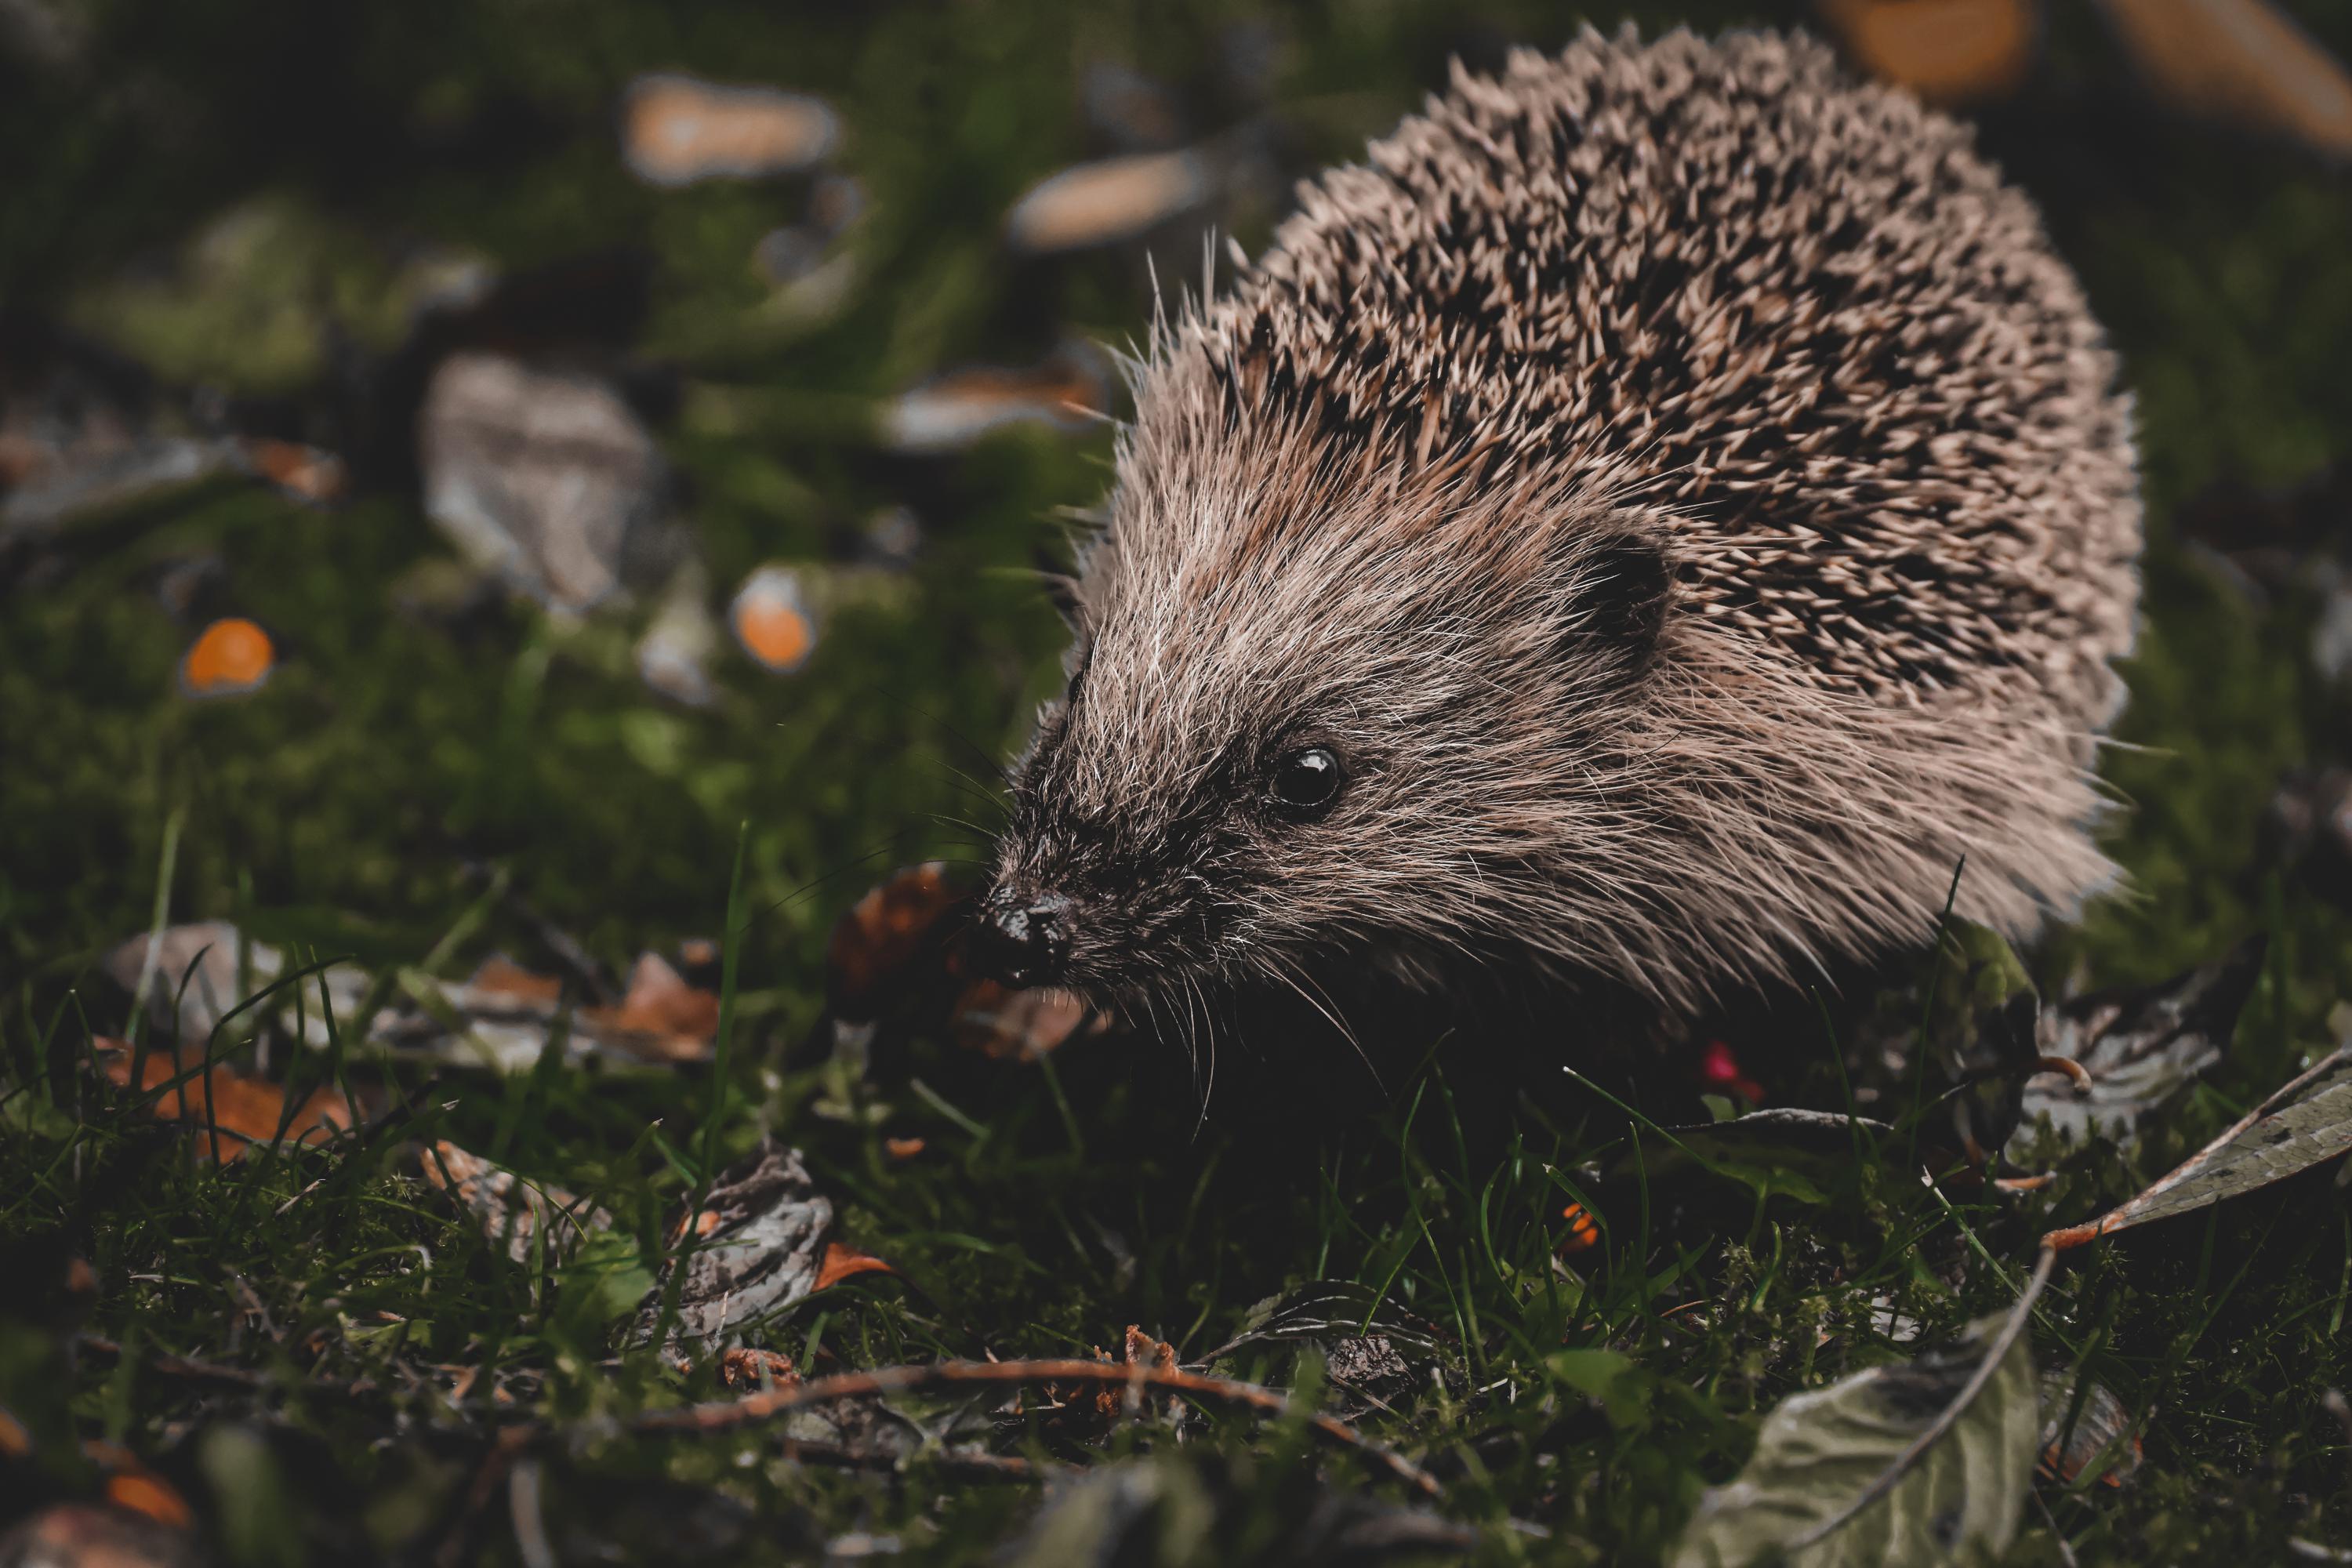 Of quills do hedgehogs possess